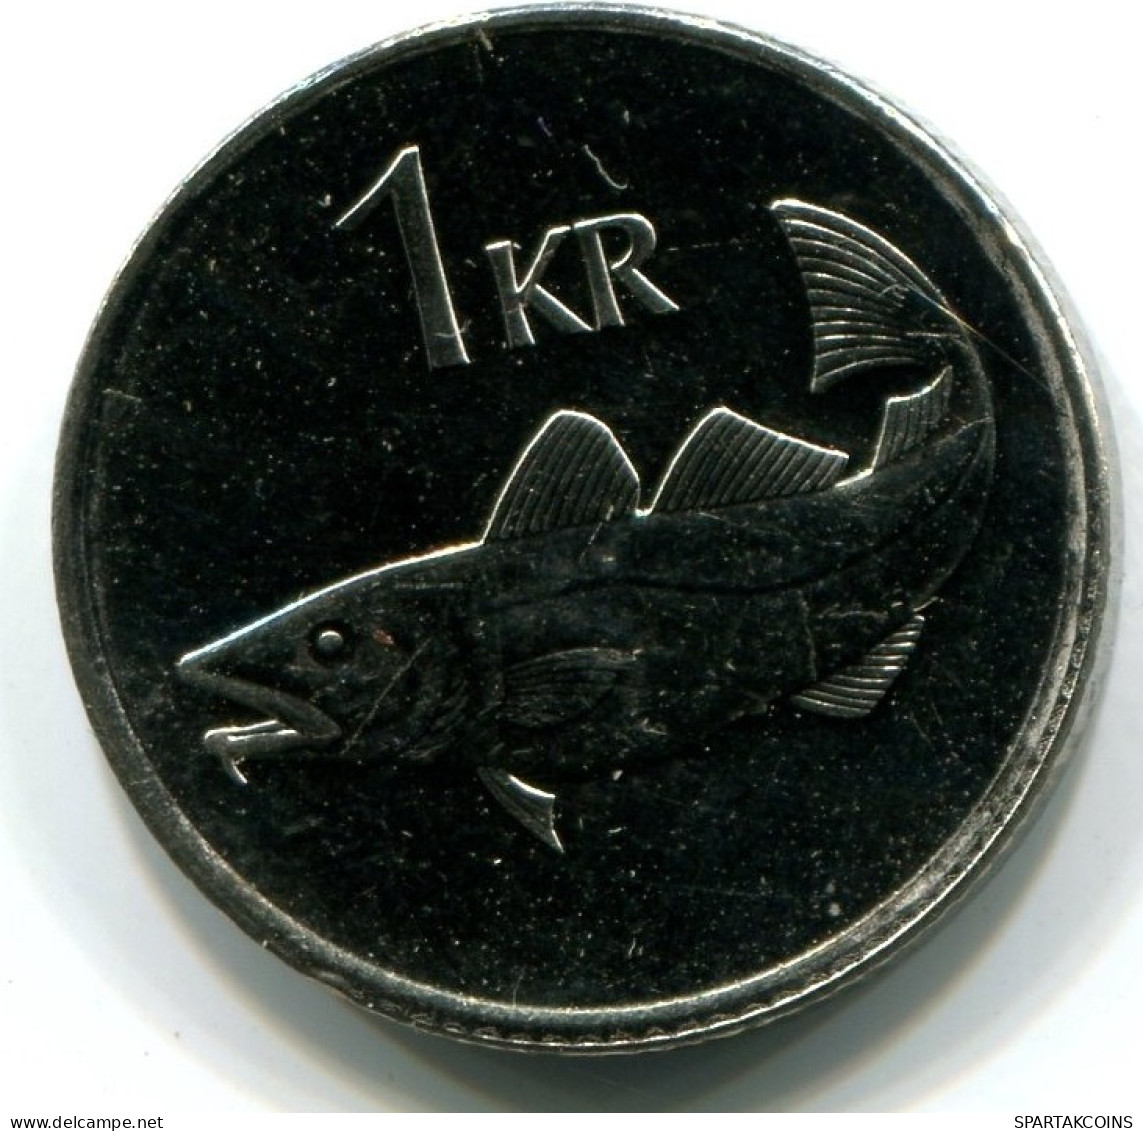 1 KRONA 1999 ICELAND UNC Fish Coin #W11292.U.A - Iceland